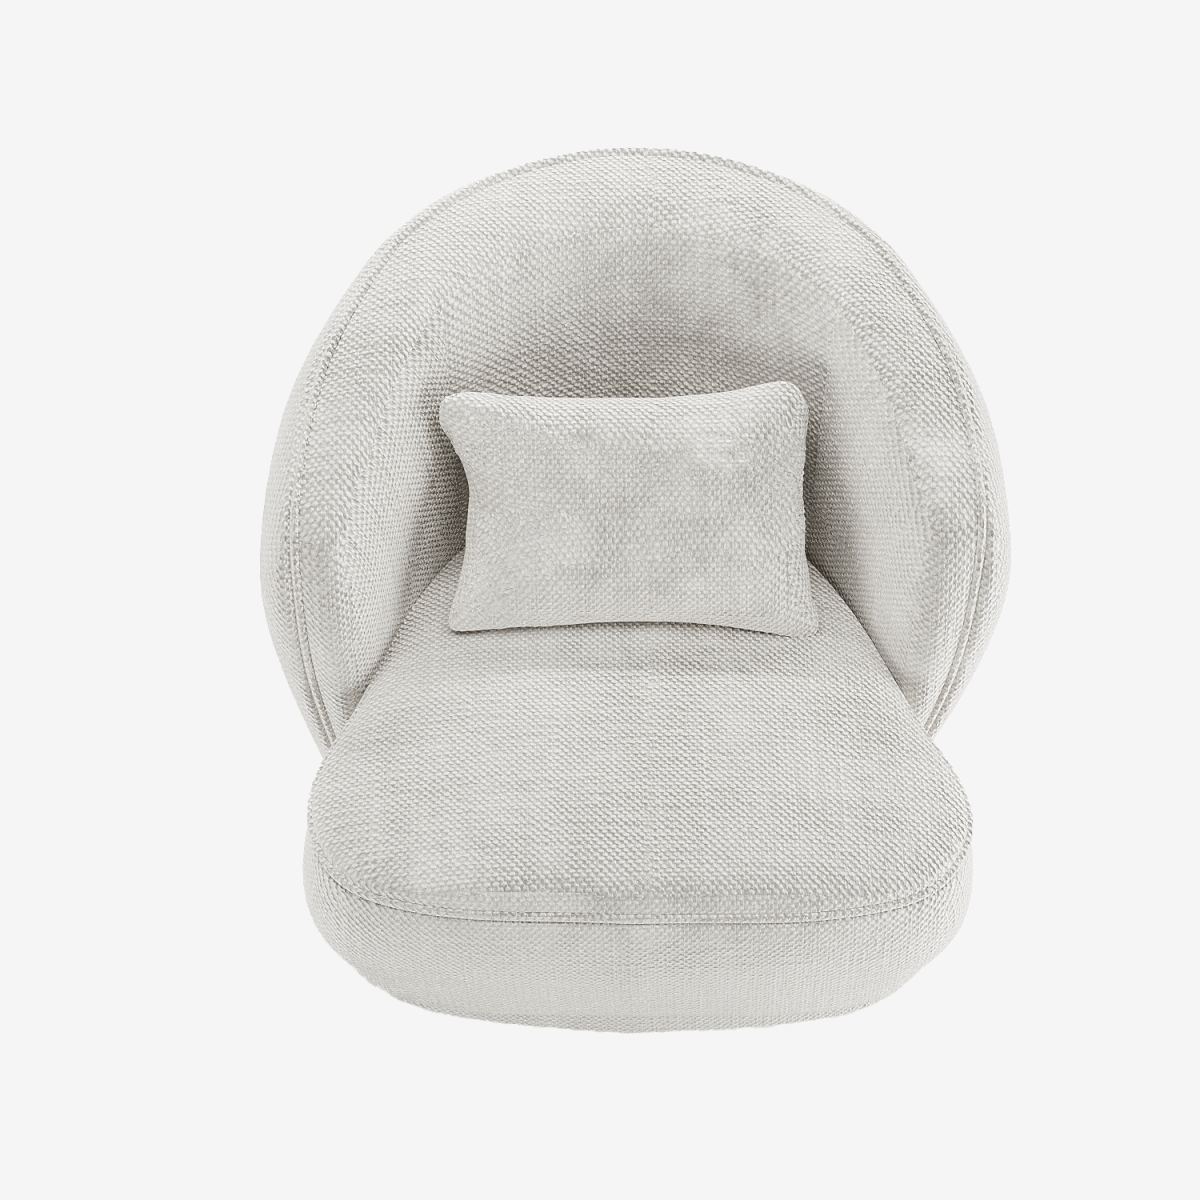 Fauteuil design tissu chenille blanc Pablo - Potiron Paris, meubles design déco pas cher